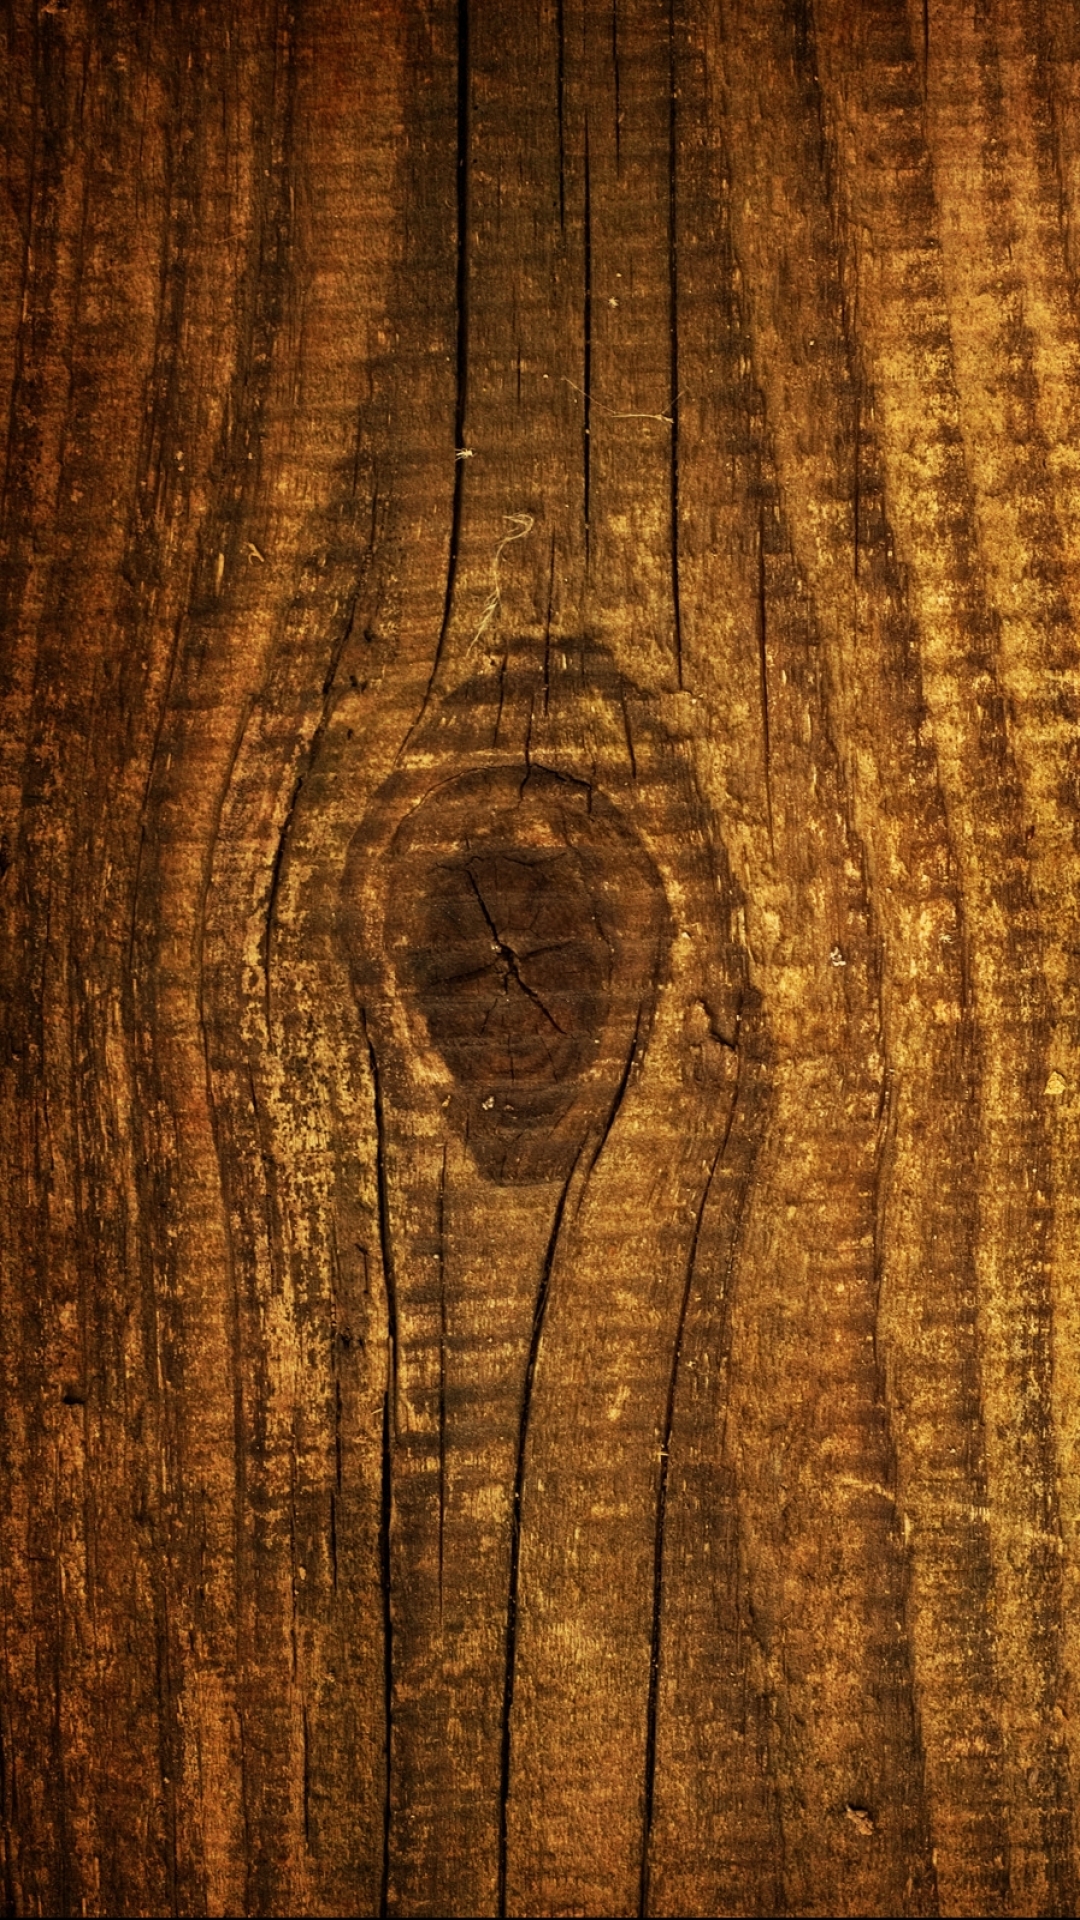 Hình nền điện thoại gỗ nghệ thuật là sự kết hợp tuyệt vời giữa sự sang trọng của gỗ và nghệ thuật. Những hình ảnh độc đáo được khắc trên bề mặt gỗ tạo nên một không gian nghệ thuật trên chiếc điện thoại của bạn.